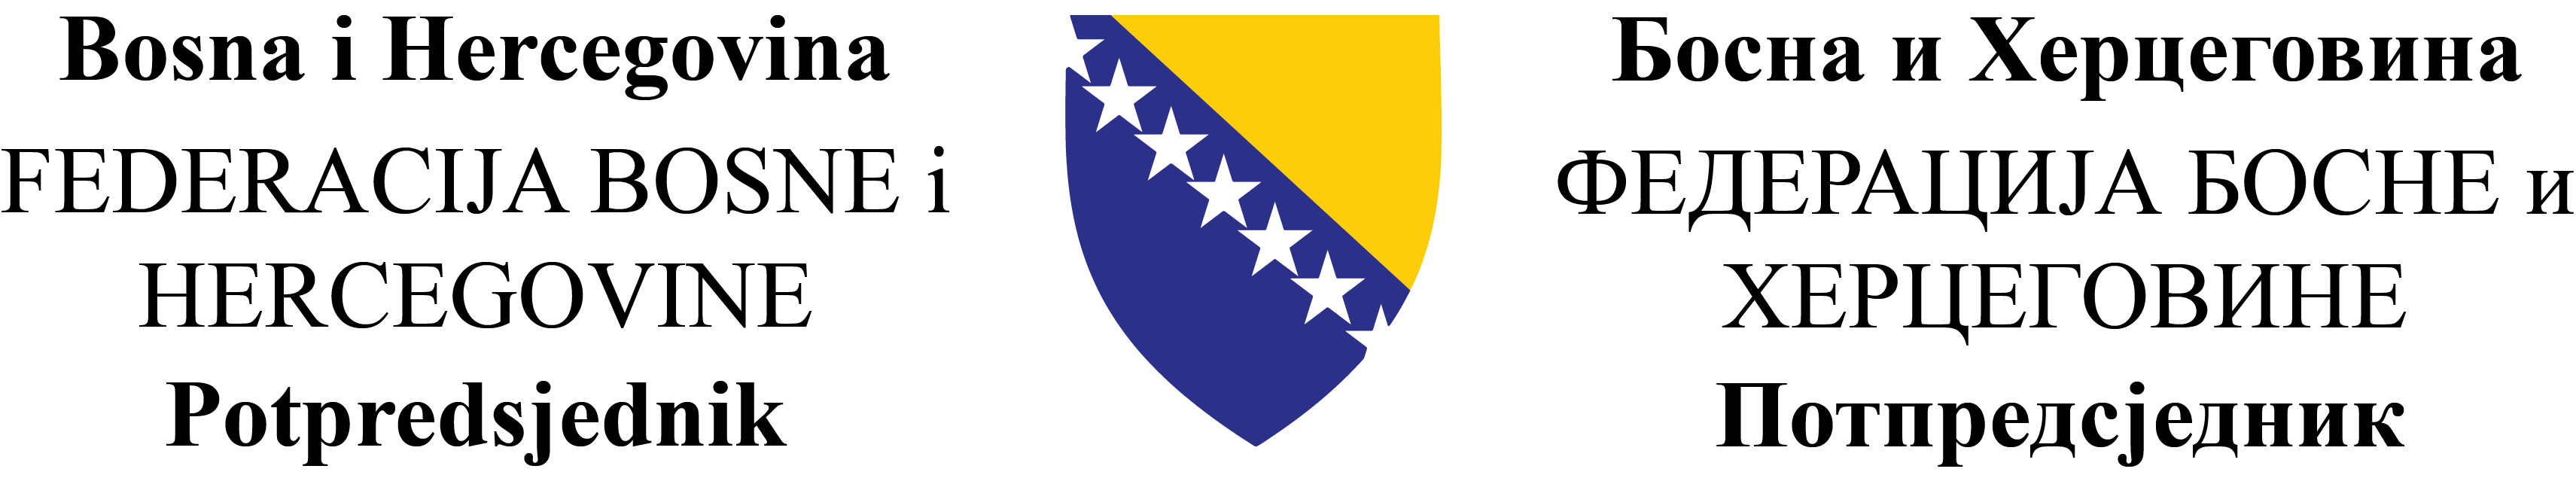 Potpredsjednik Federacije Bosne i Hercegovine